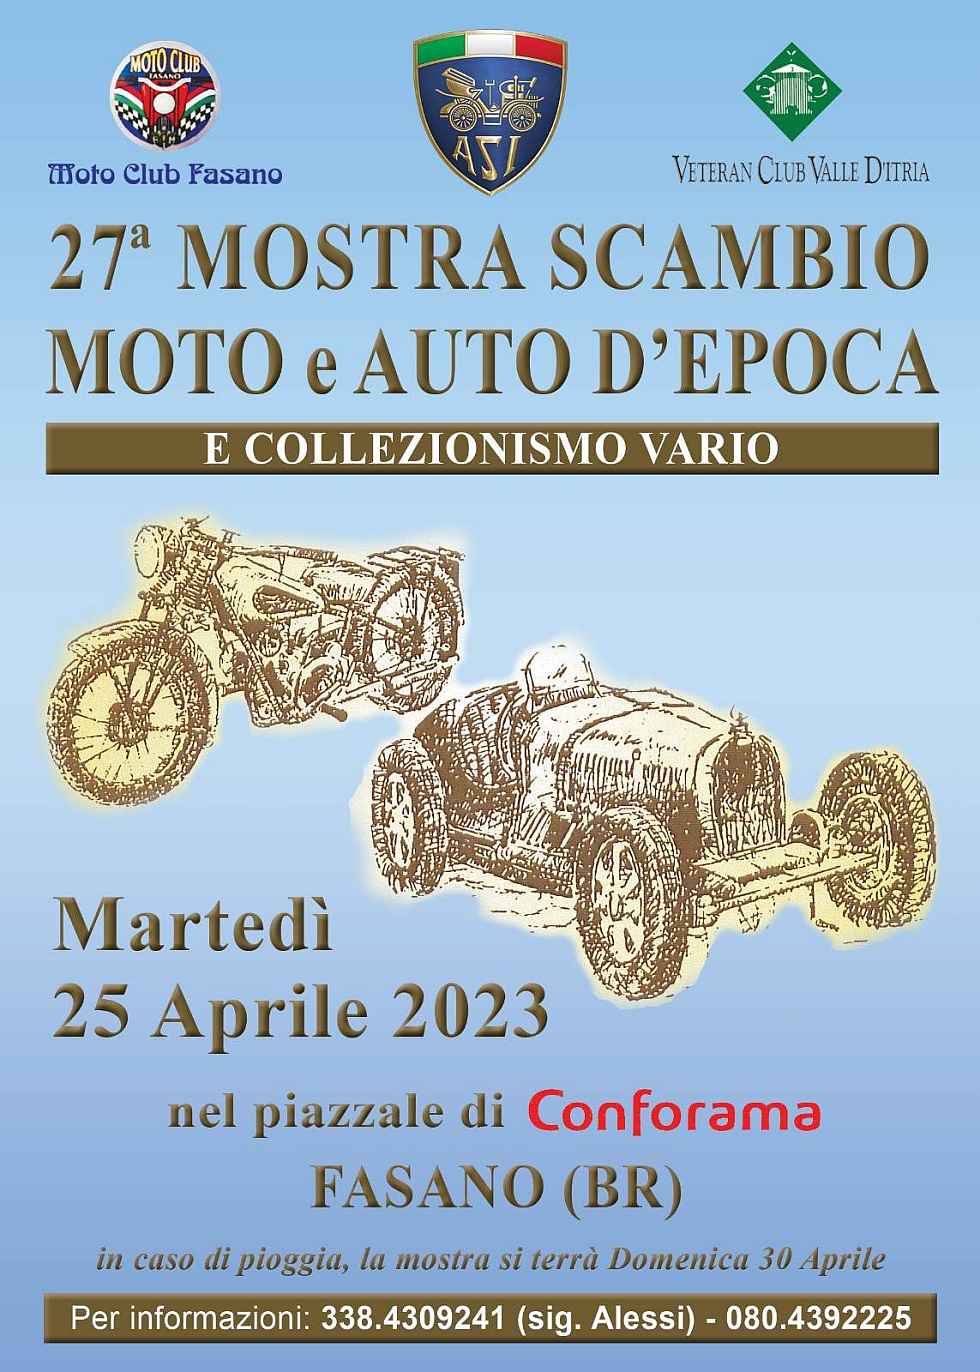 Fasano (BR)
" Mostra Scambio - Auto, Moto, Cicli d'Epoca"
25 Aprile 2022 